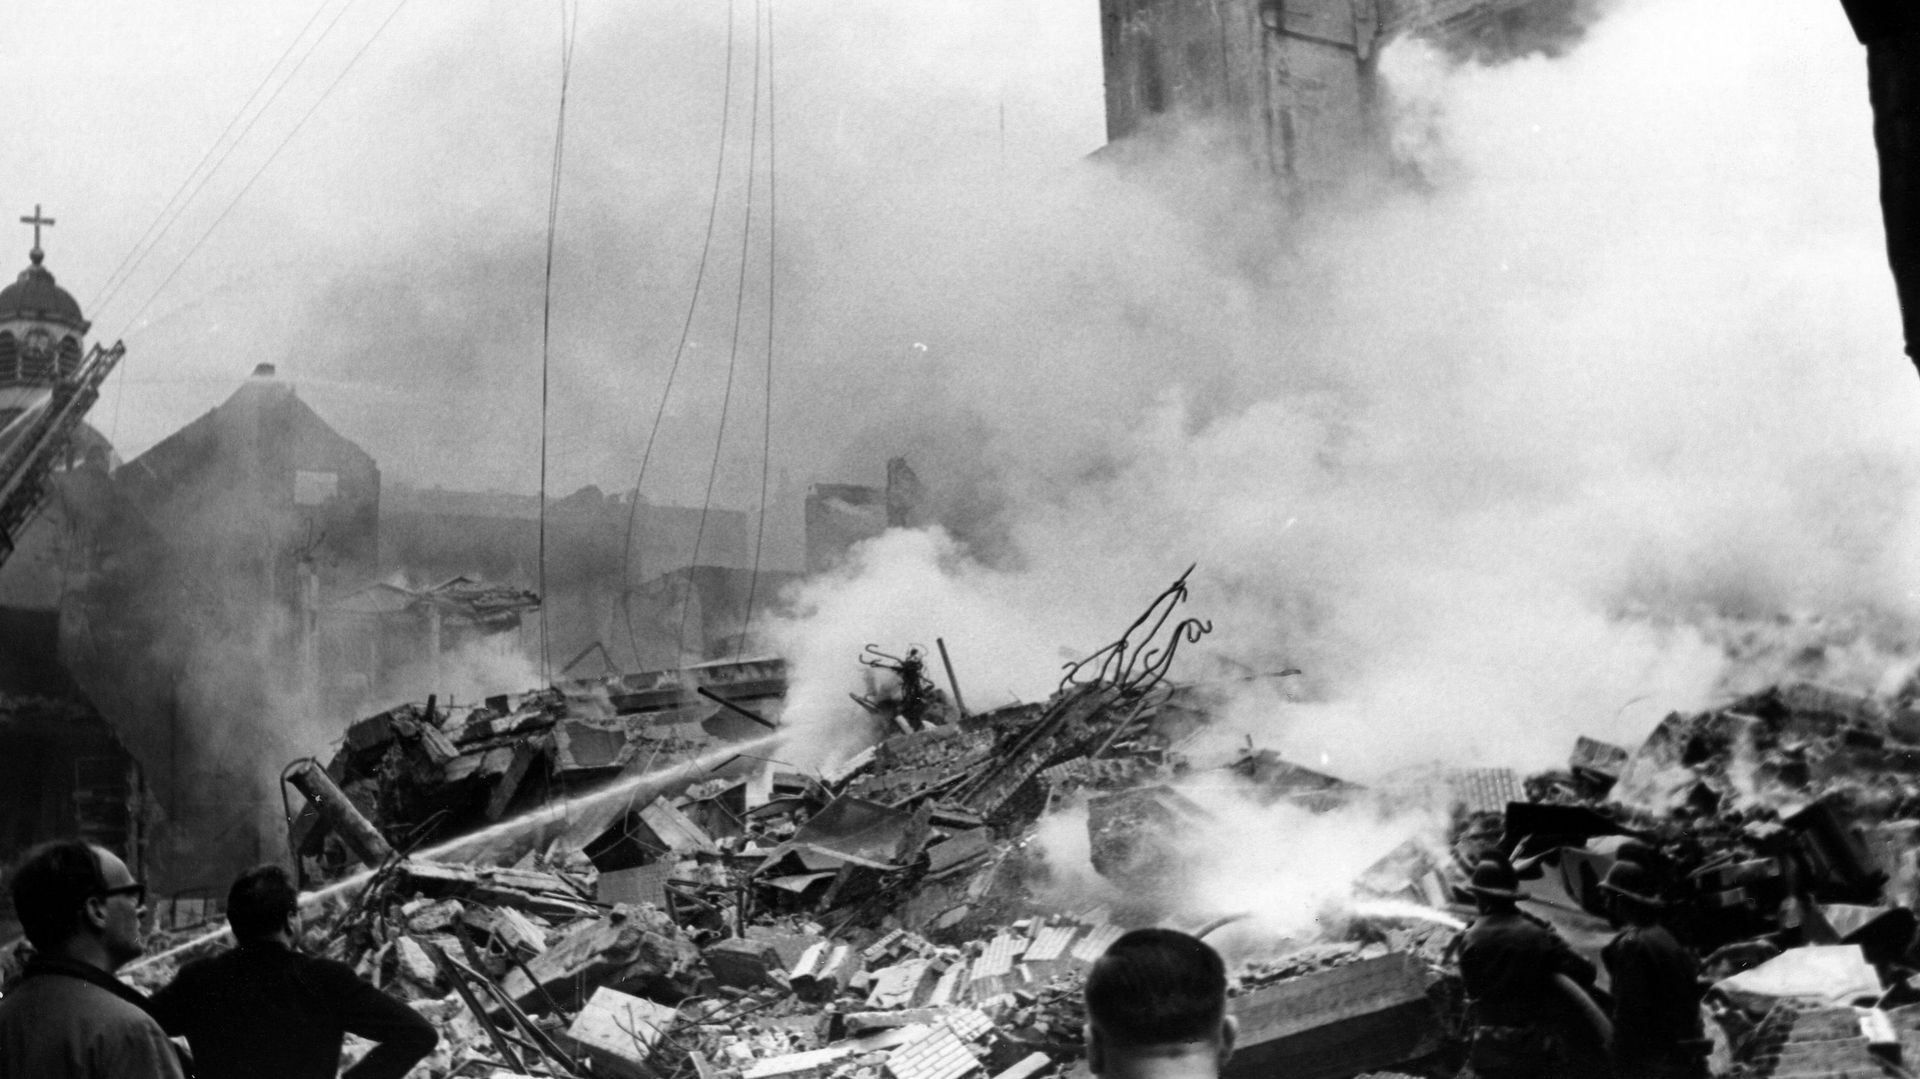 Il y a 50 ans, un incendie détruisait l'Innovation à Bruxelles